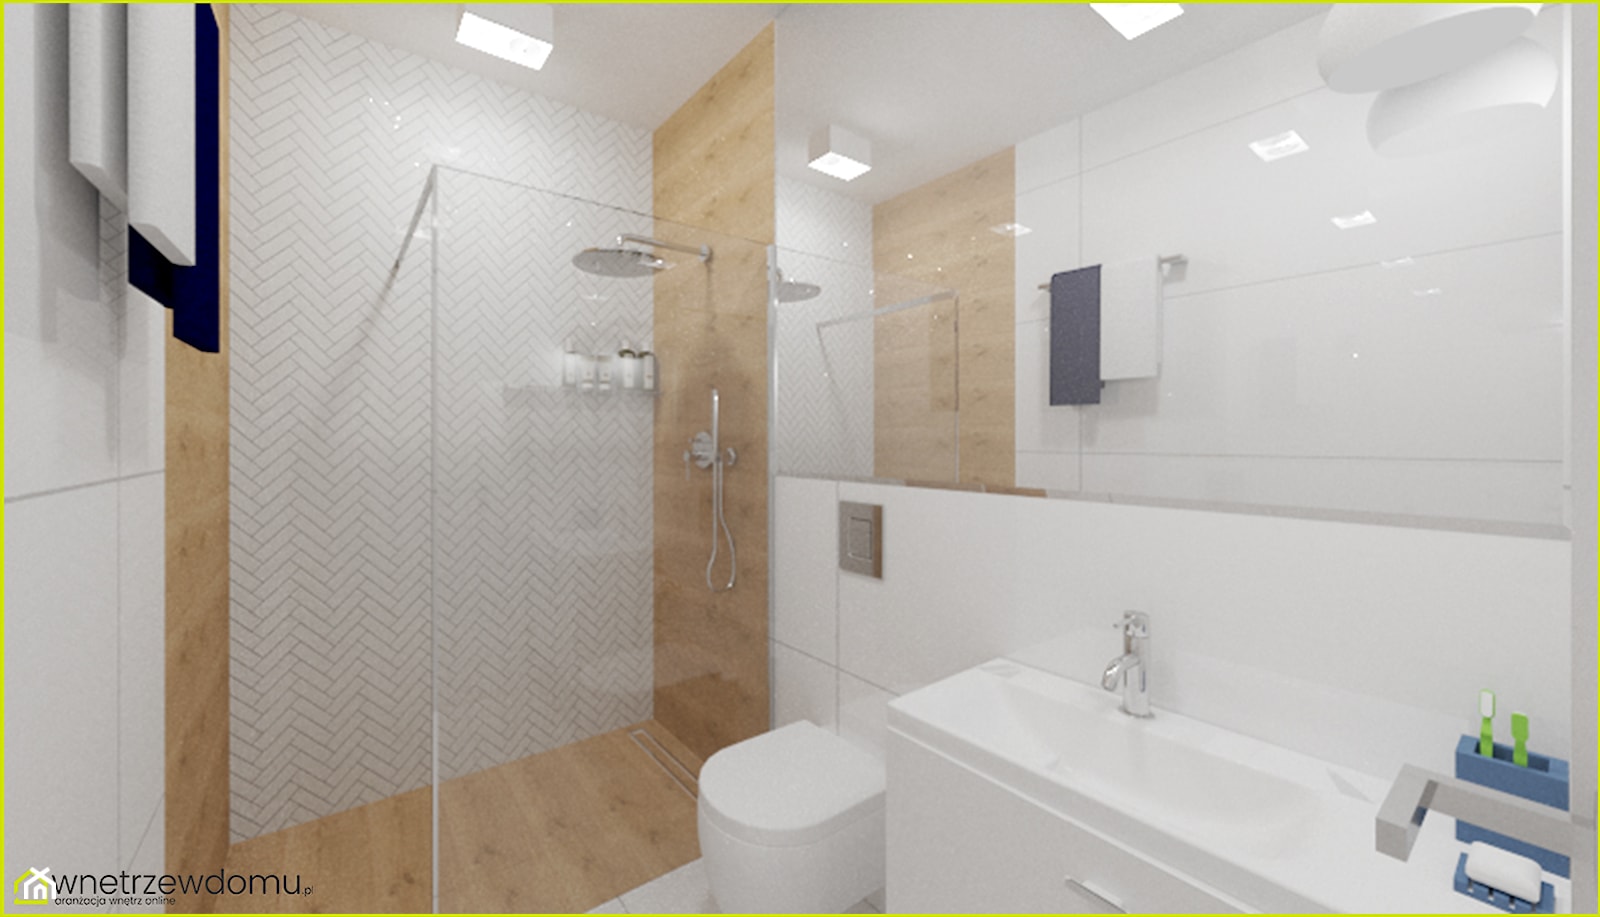 2,5-metrowa łazienka z prysznicem - zdjęcie od wnetrzewdomu - Homebook